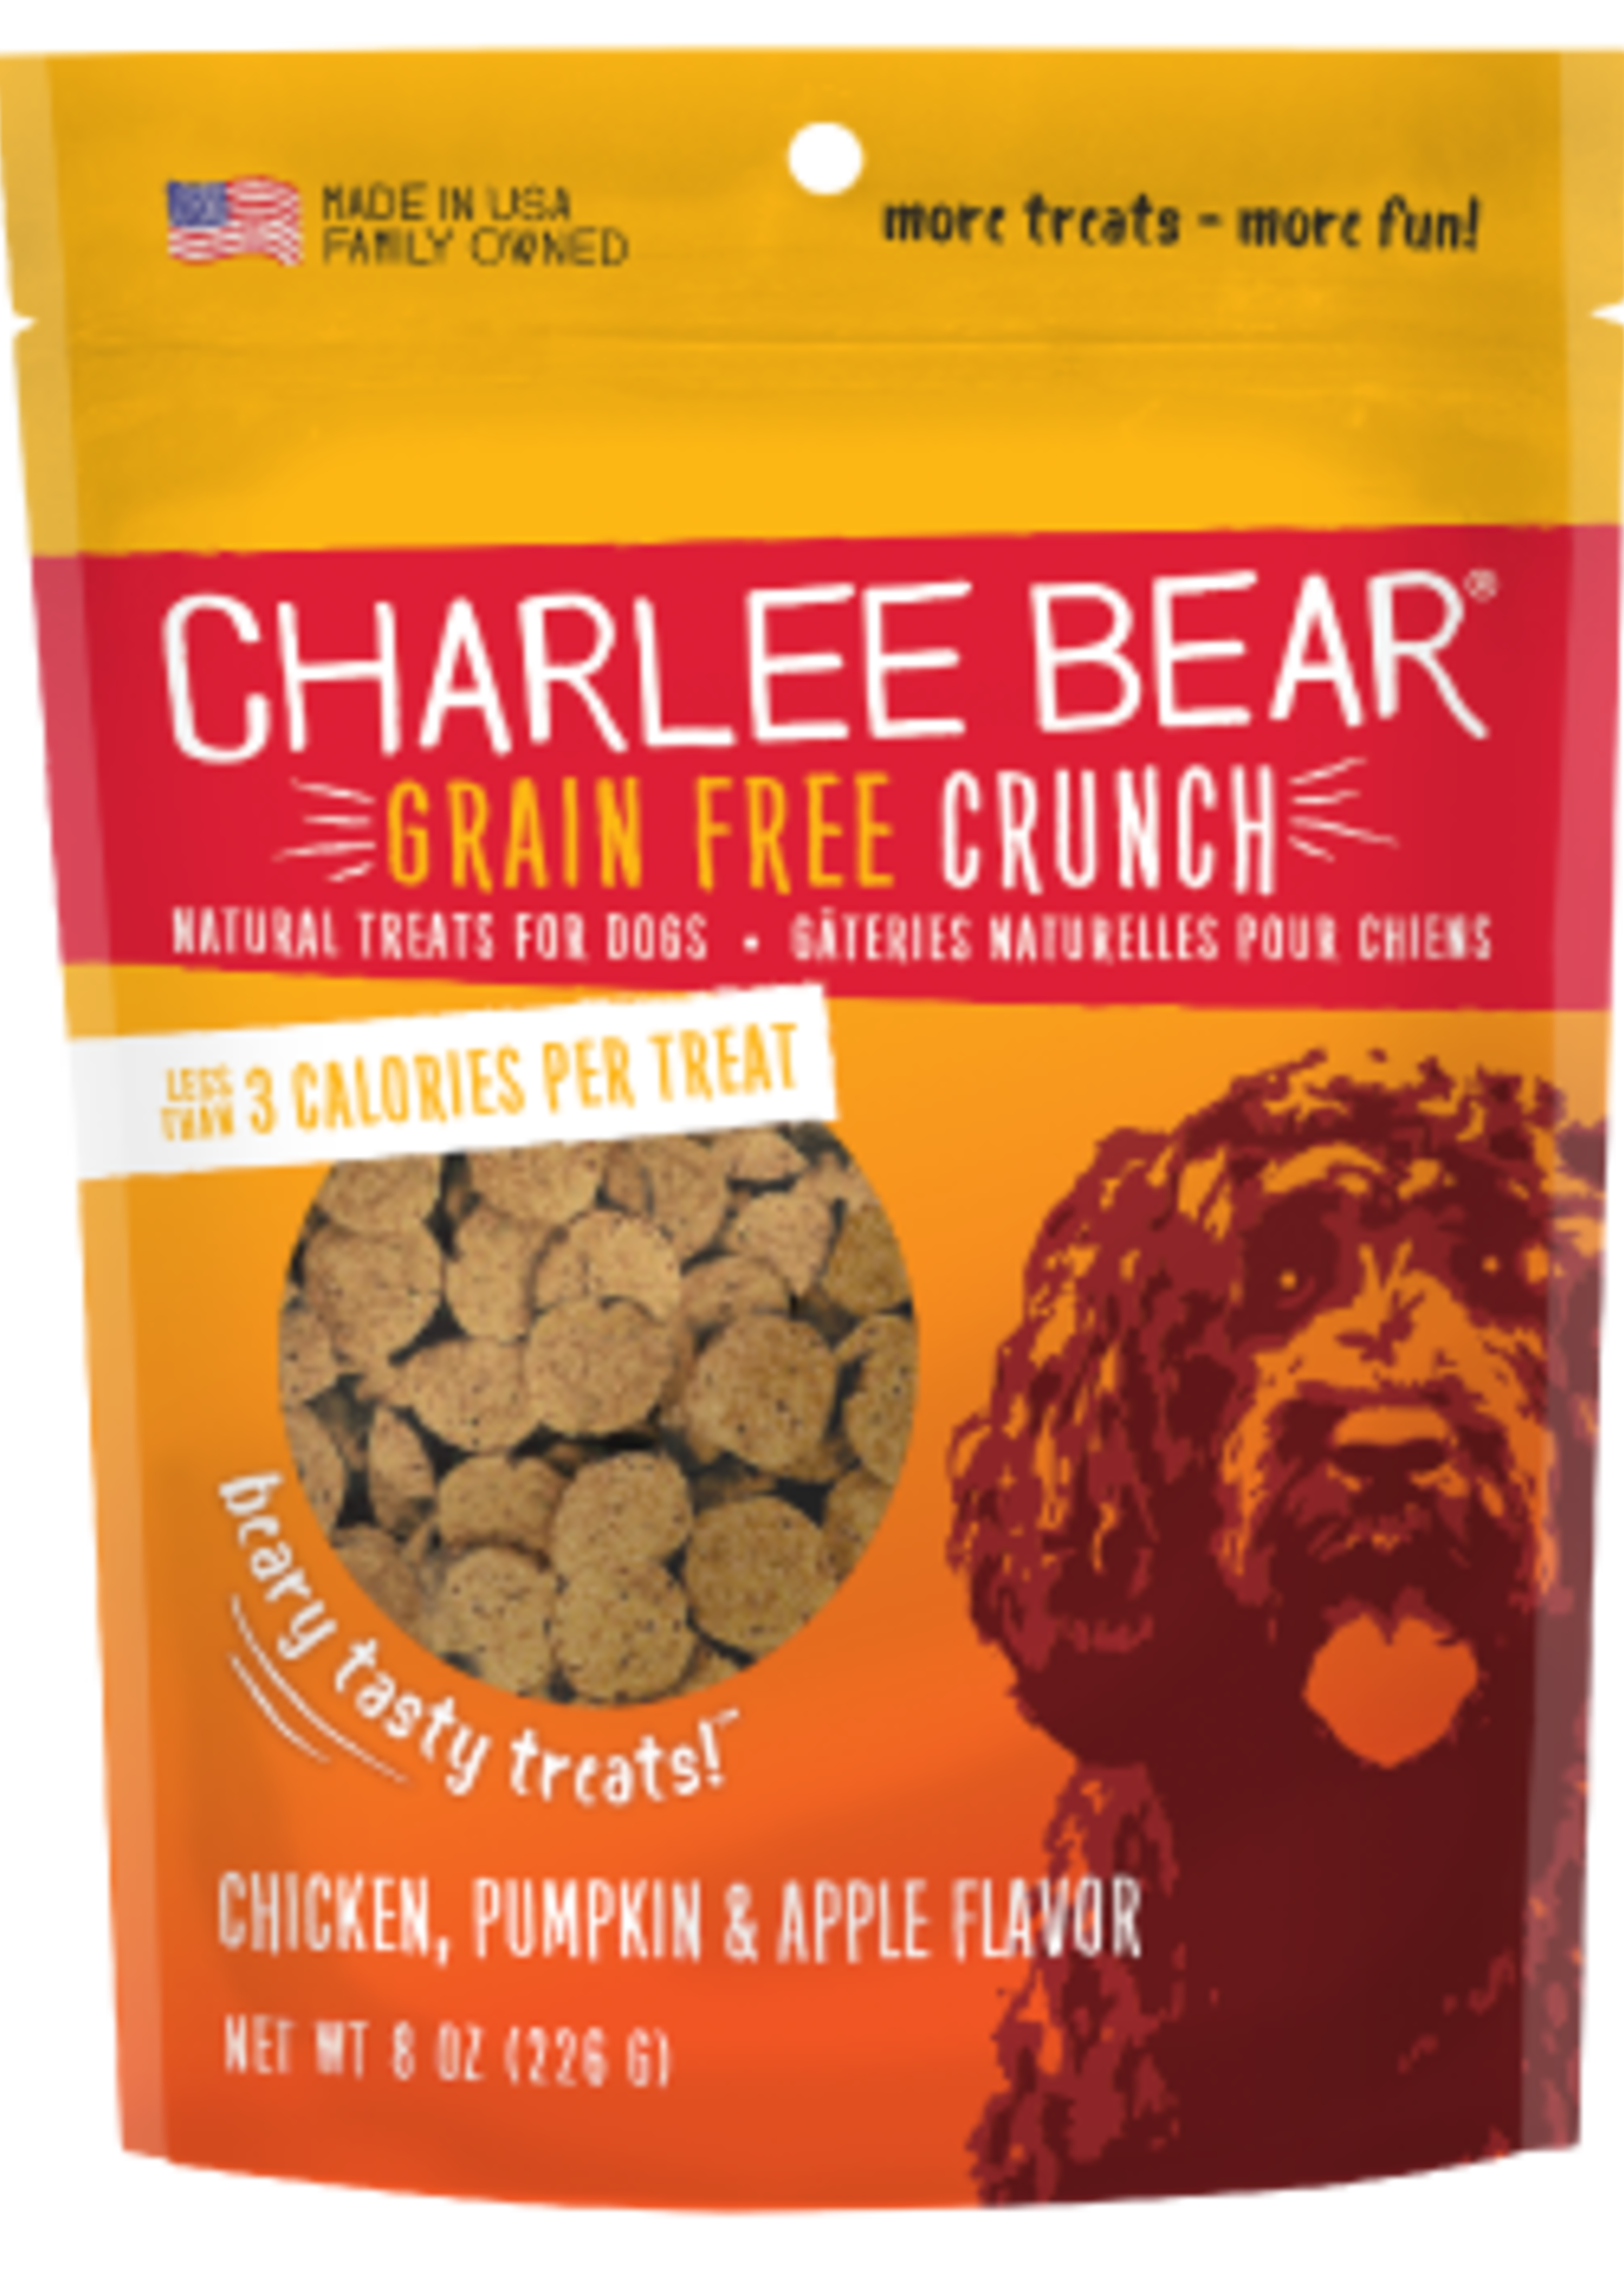 Charlee Bear Grain Free Crunch Chicken, Pumpkin & Apple Flavor